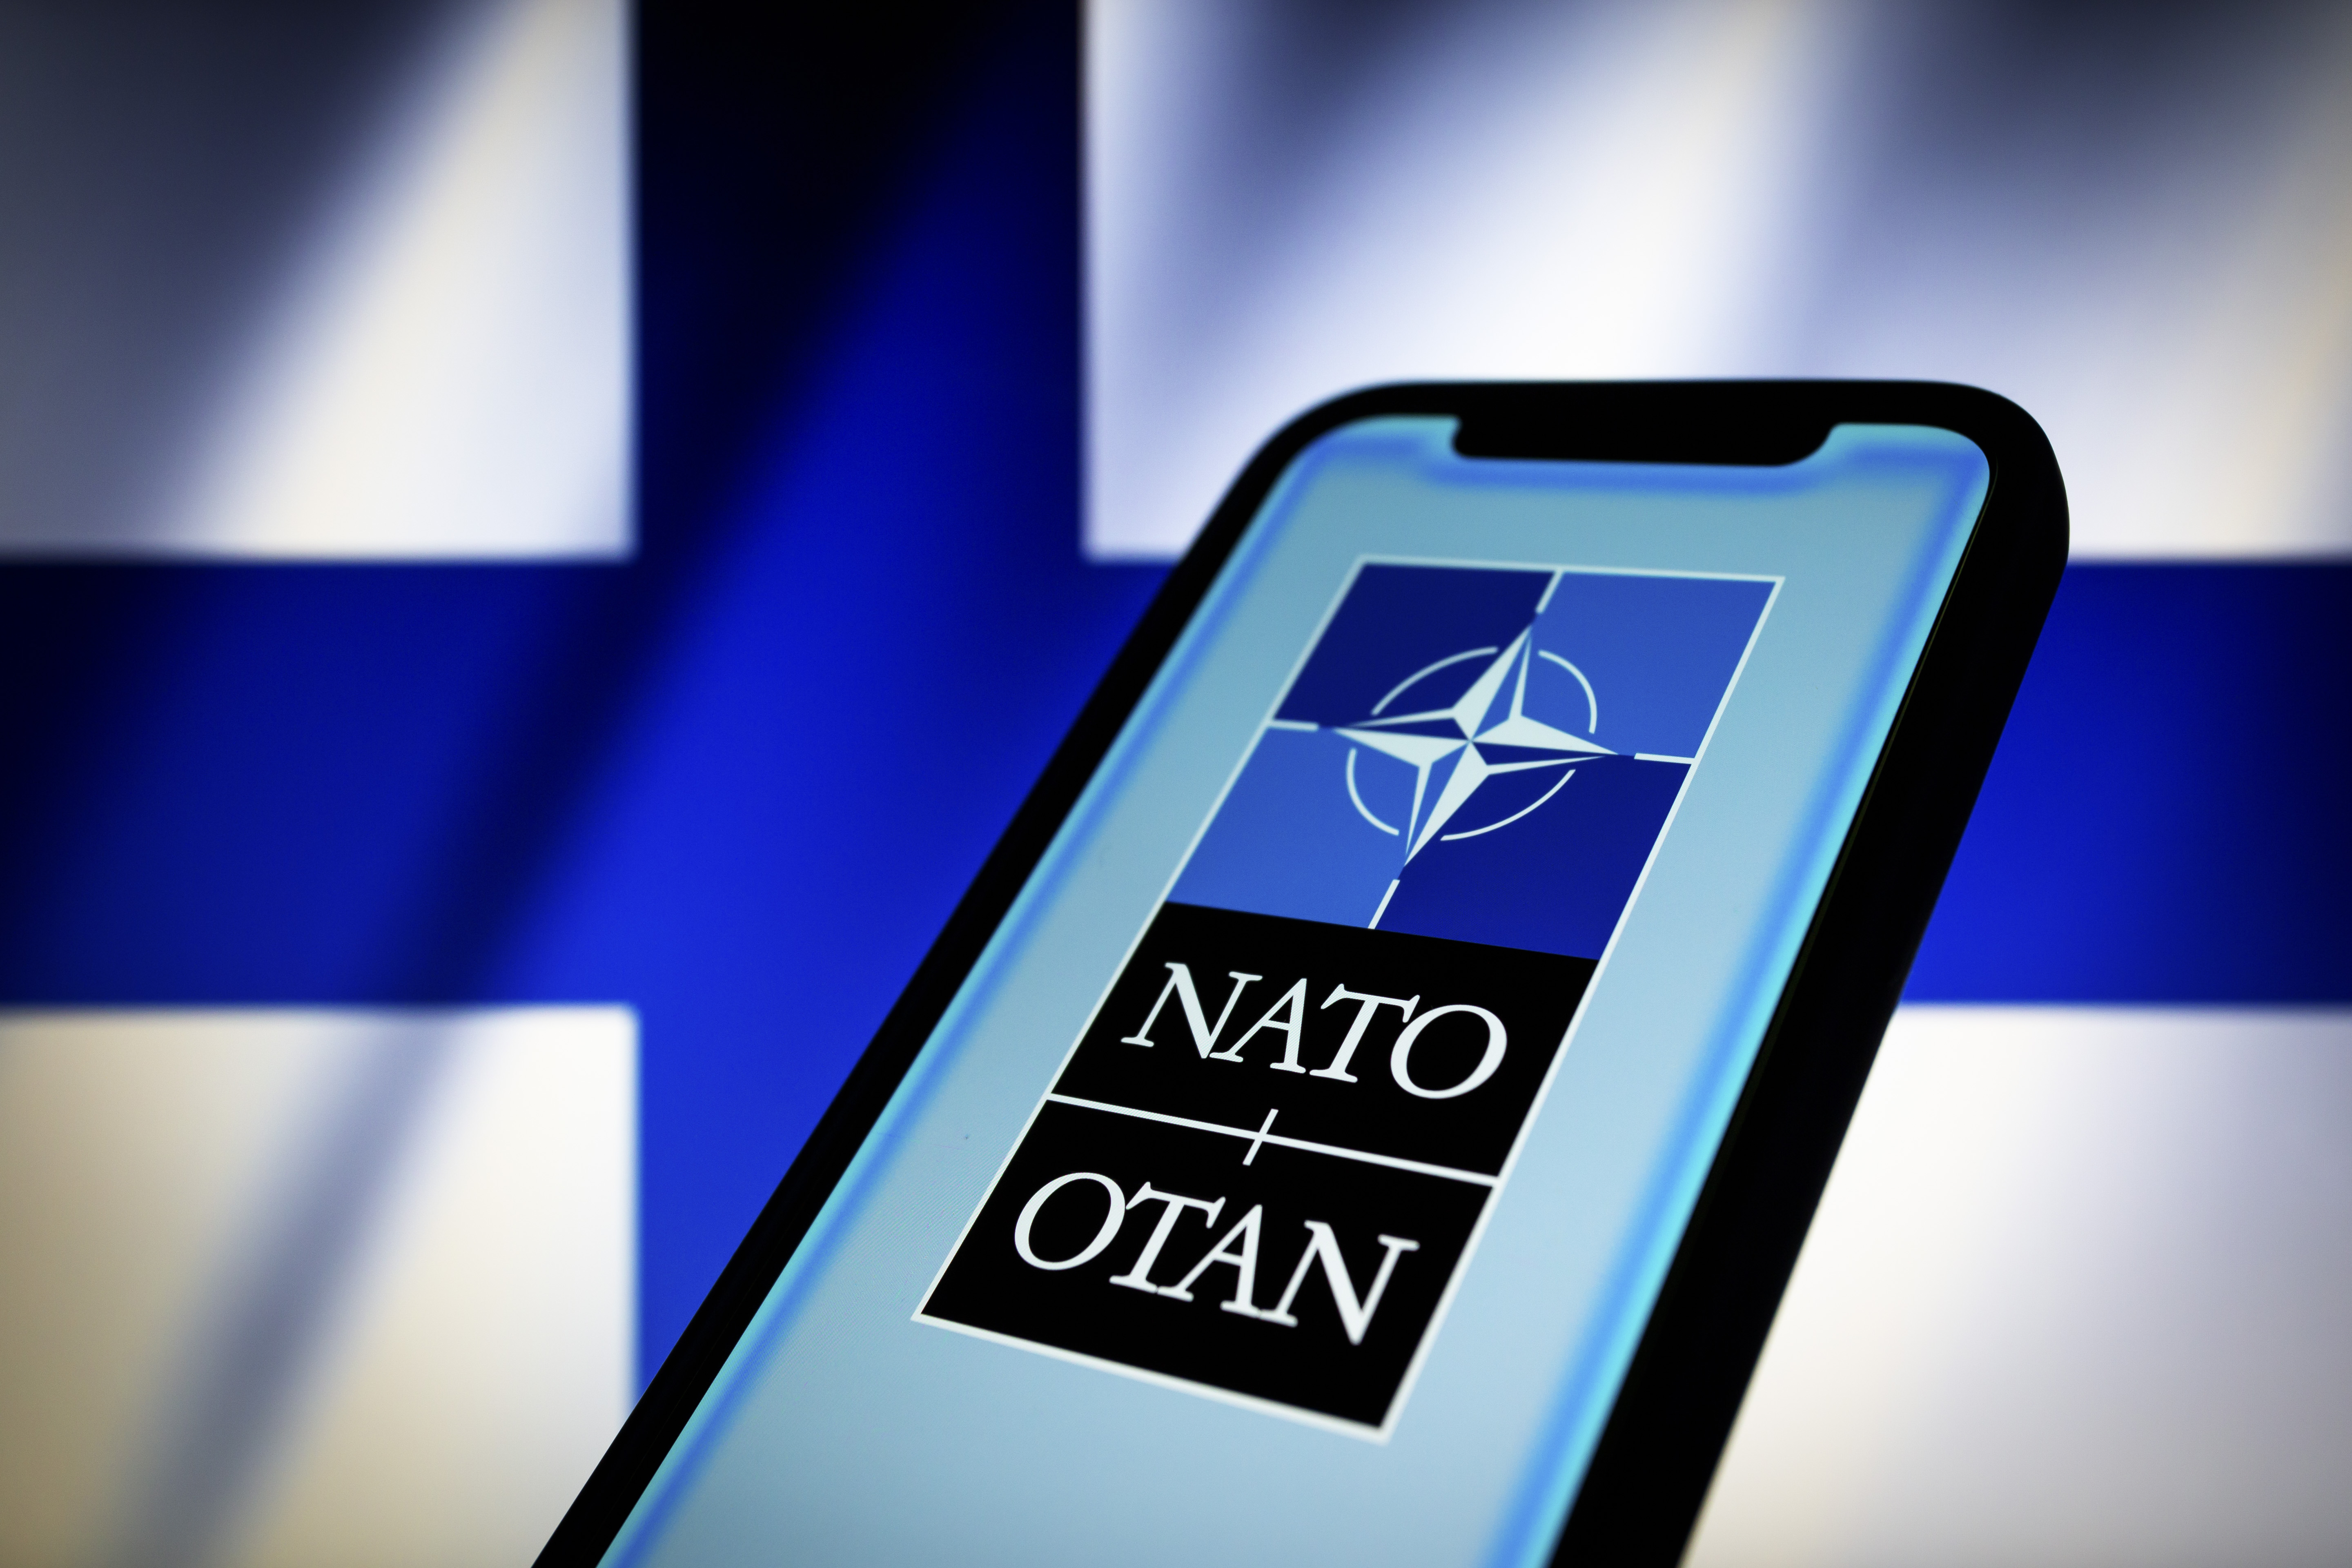 Финляндия понадеялась решить размолвку с Турцией по НАТО за несколько недель